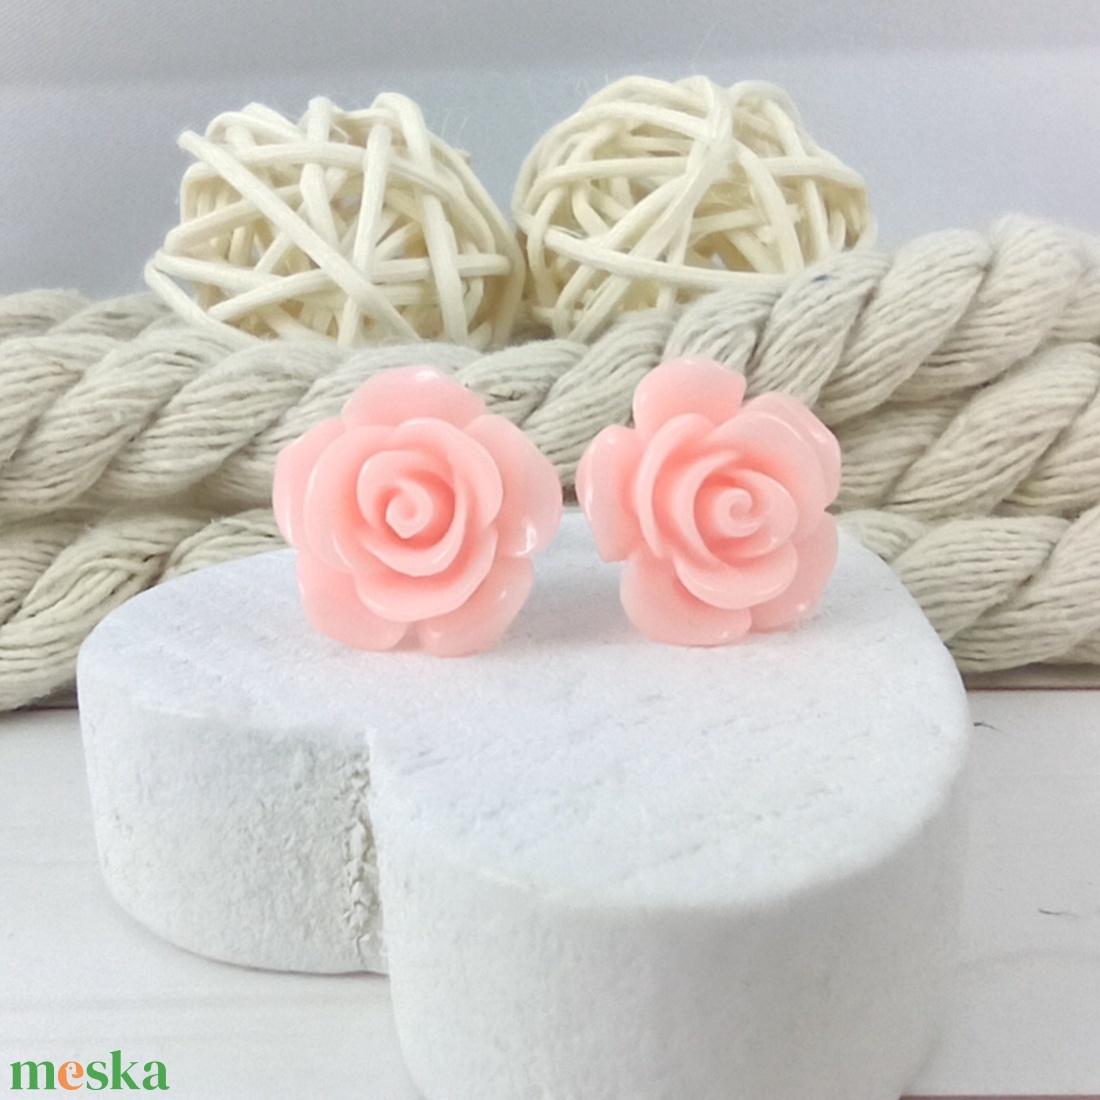 Rózsaszín rózsás antiallergén nemesacél acél fülbevaló tavaszi nyári ajándék nőnek lánynak hétköznapra esküvőre - ékszer - fülbevaló - pötty fülbevaló - Meska.hu